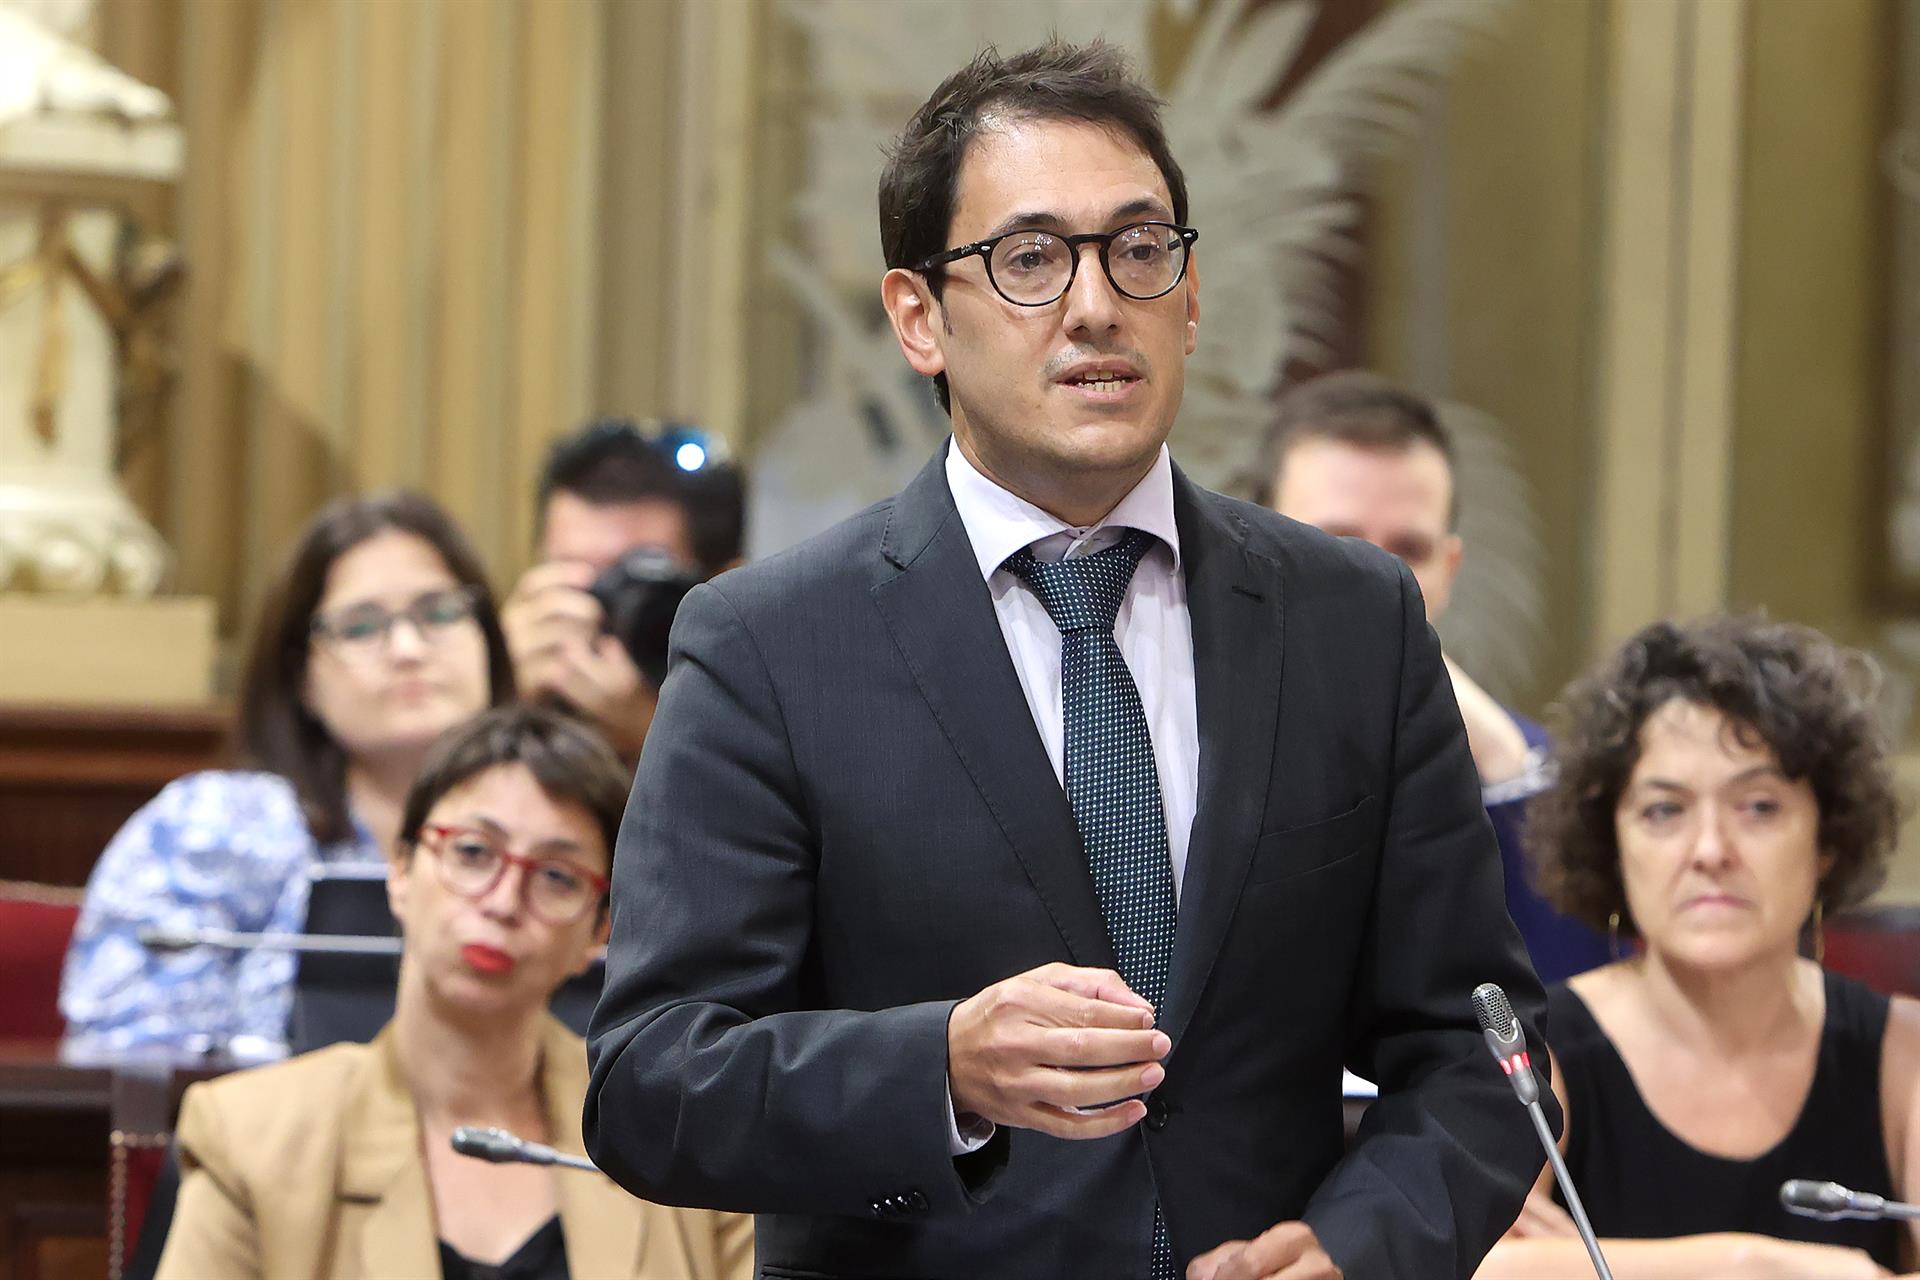 El portavoz del Grupo Parlamentario Socialista, Iago Negueruela durante una sesión de control en el Parlament balear.